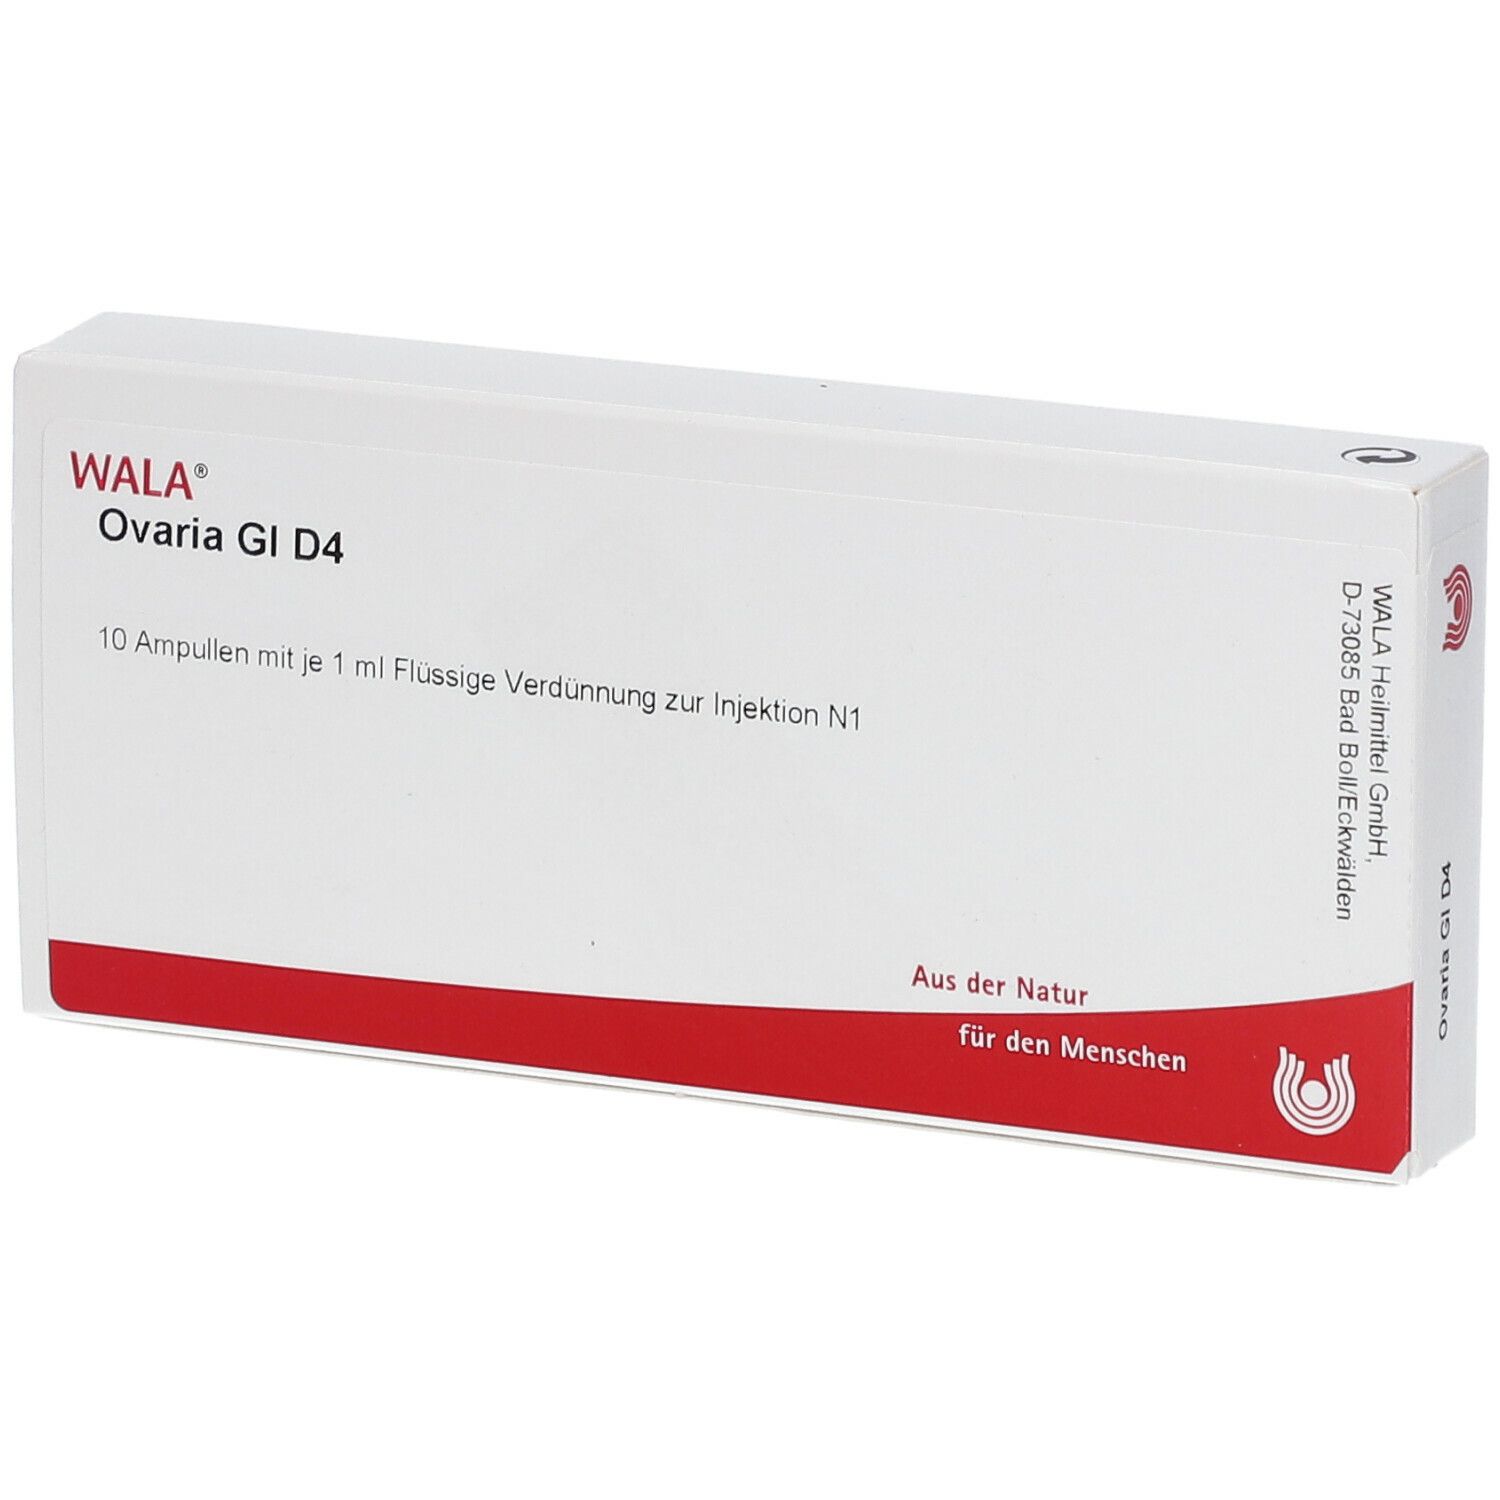 Wala® Ovaria Gl D 4